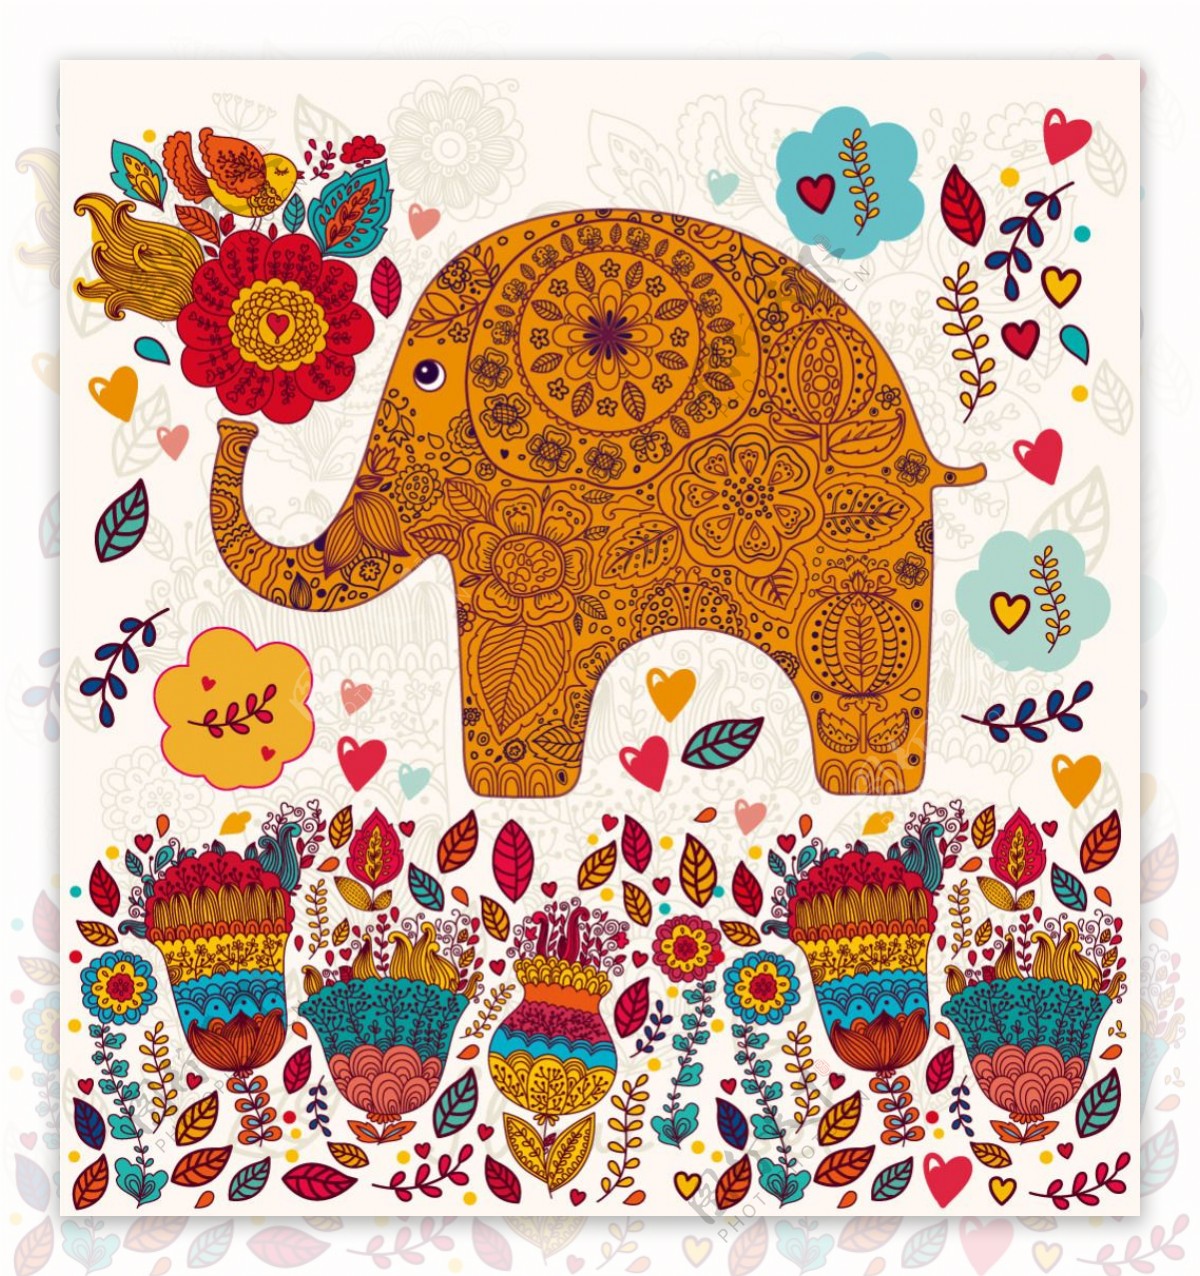 可爱卡通花卉动植物大象花纹矢量素材